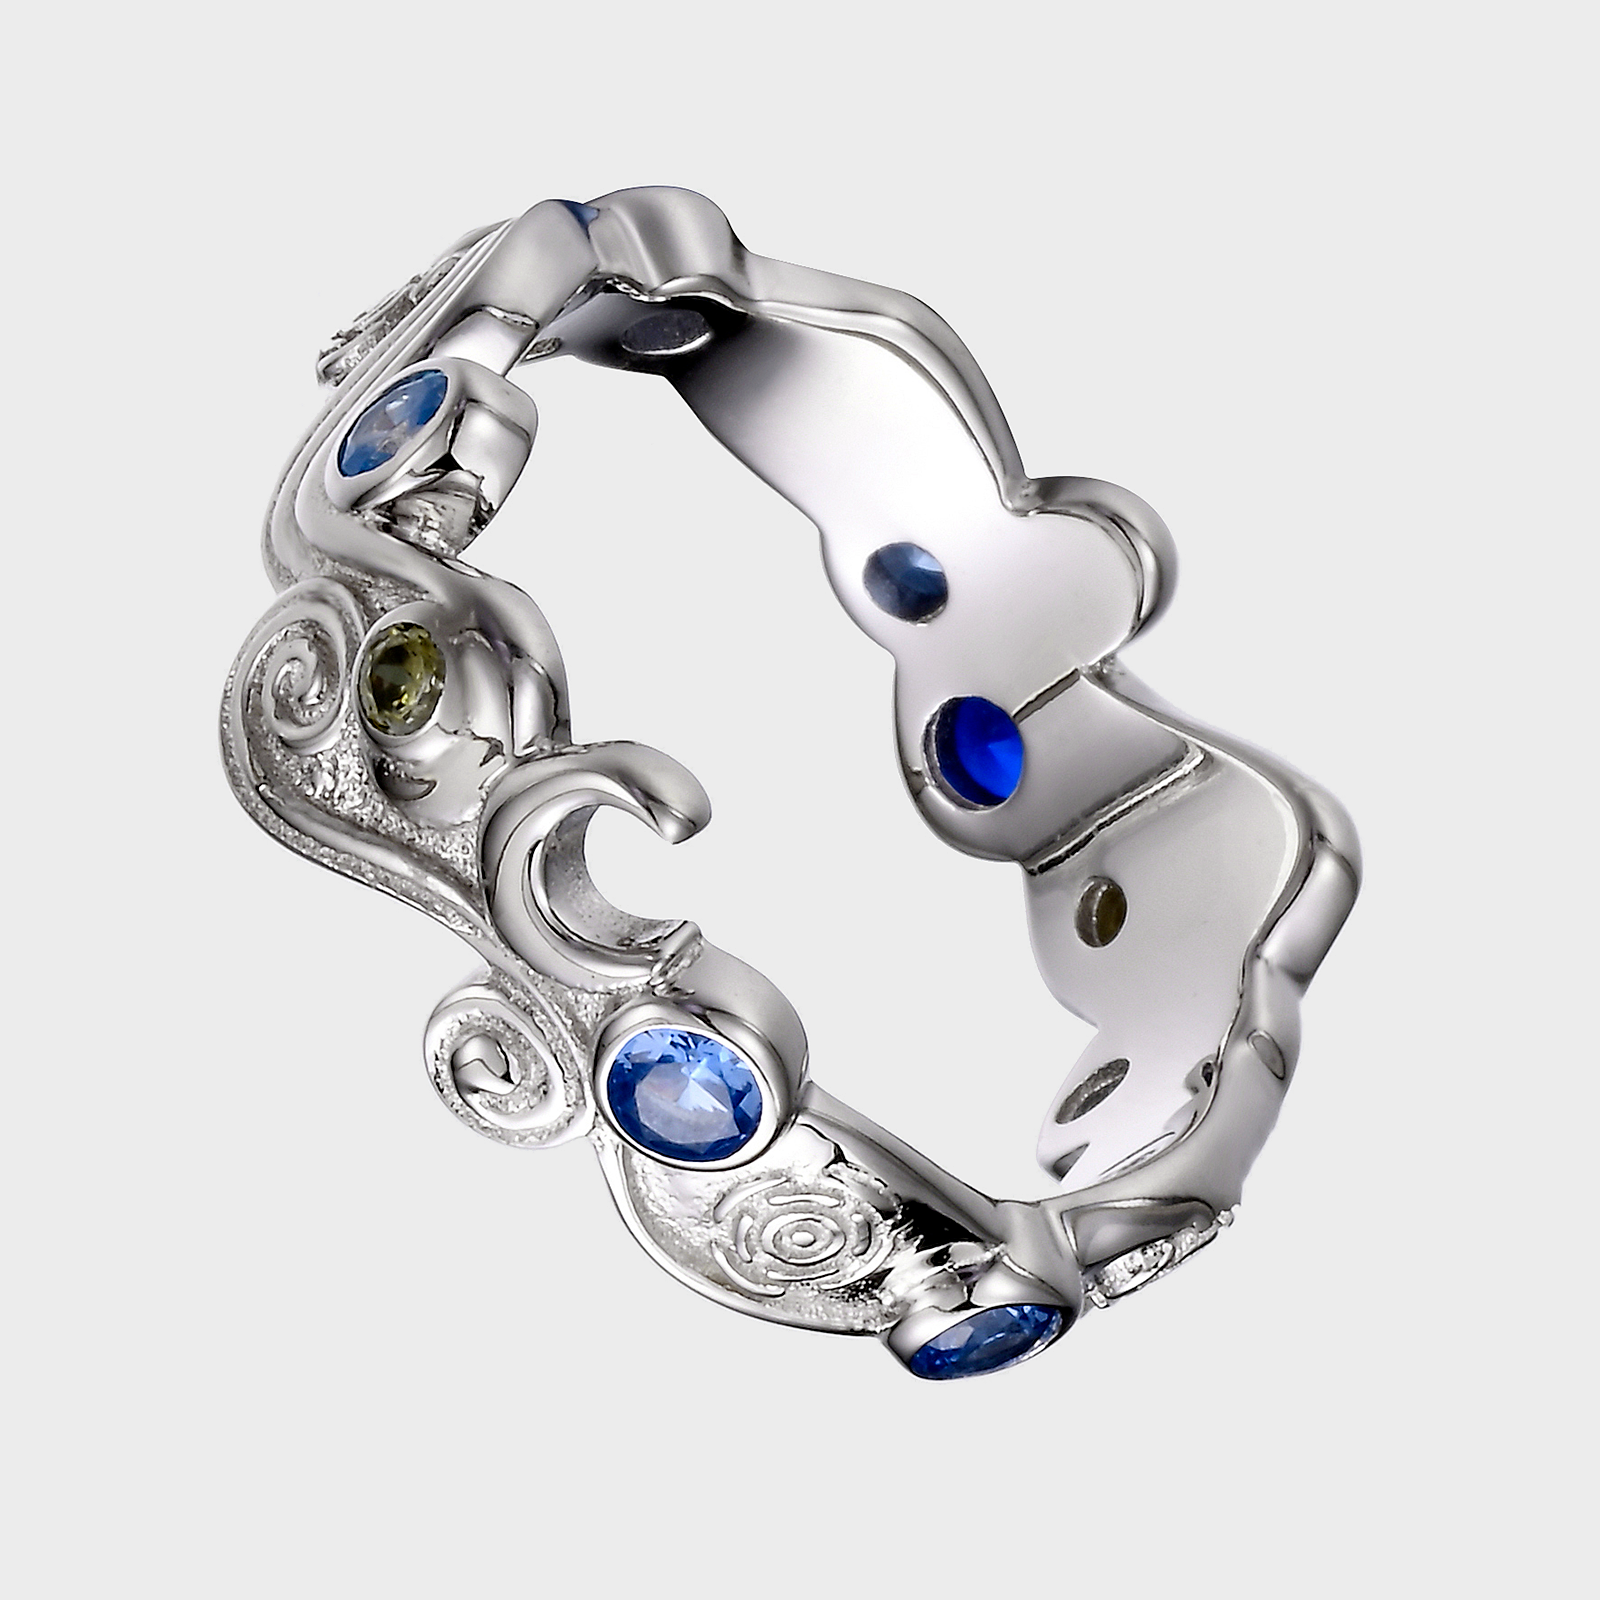 Buy Modern Gold Ring Design for Girls White Stone Adjustable Finger Ring  Online